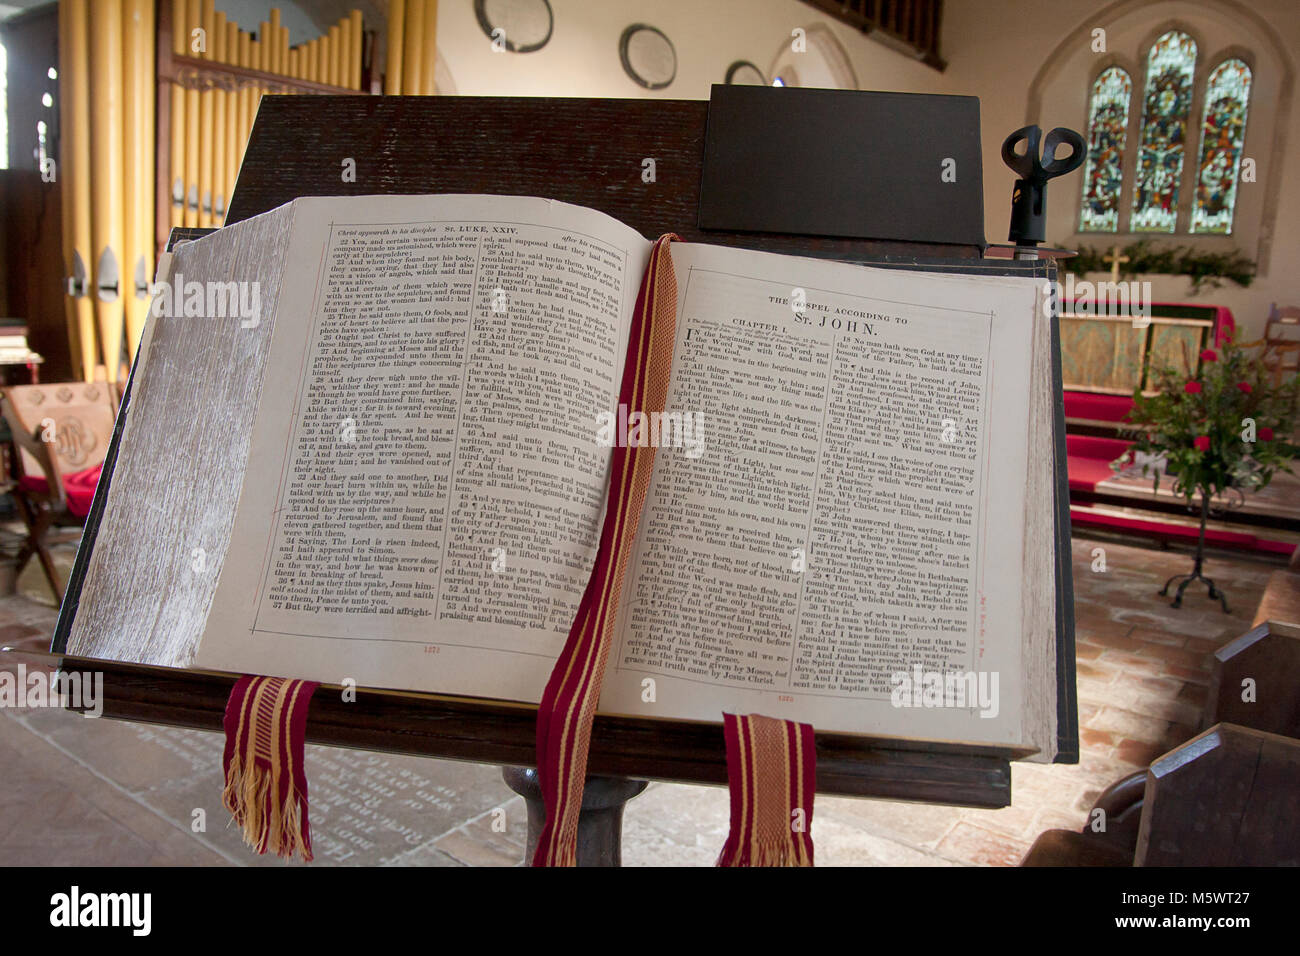 Sainte Bible ouverte sur les pages Evangile de saint Jean, St Mary's Church, vallée de fournitures médicales,test, près de Salisbury, Hampshire, Angleterre Banque D'Images